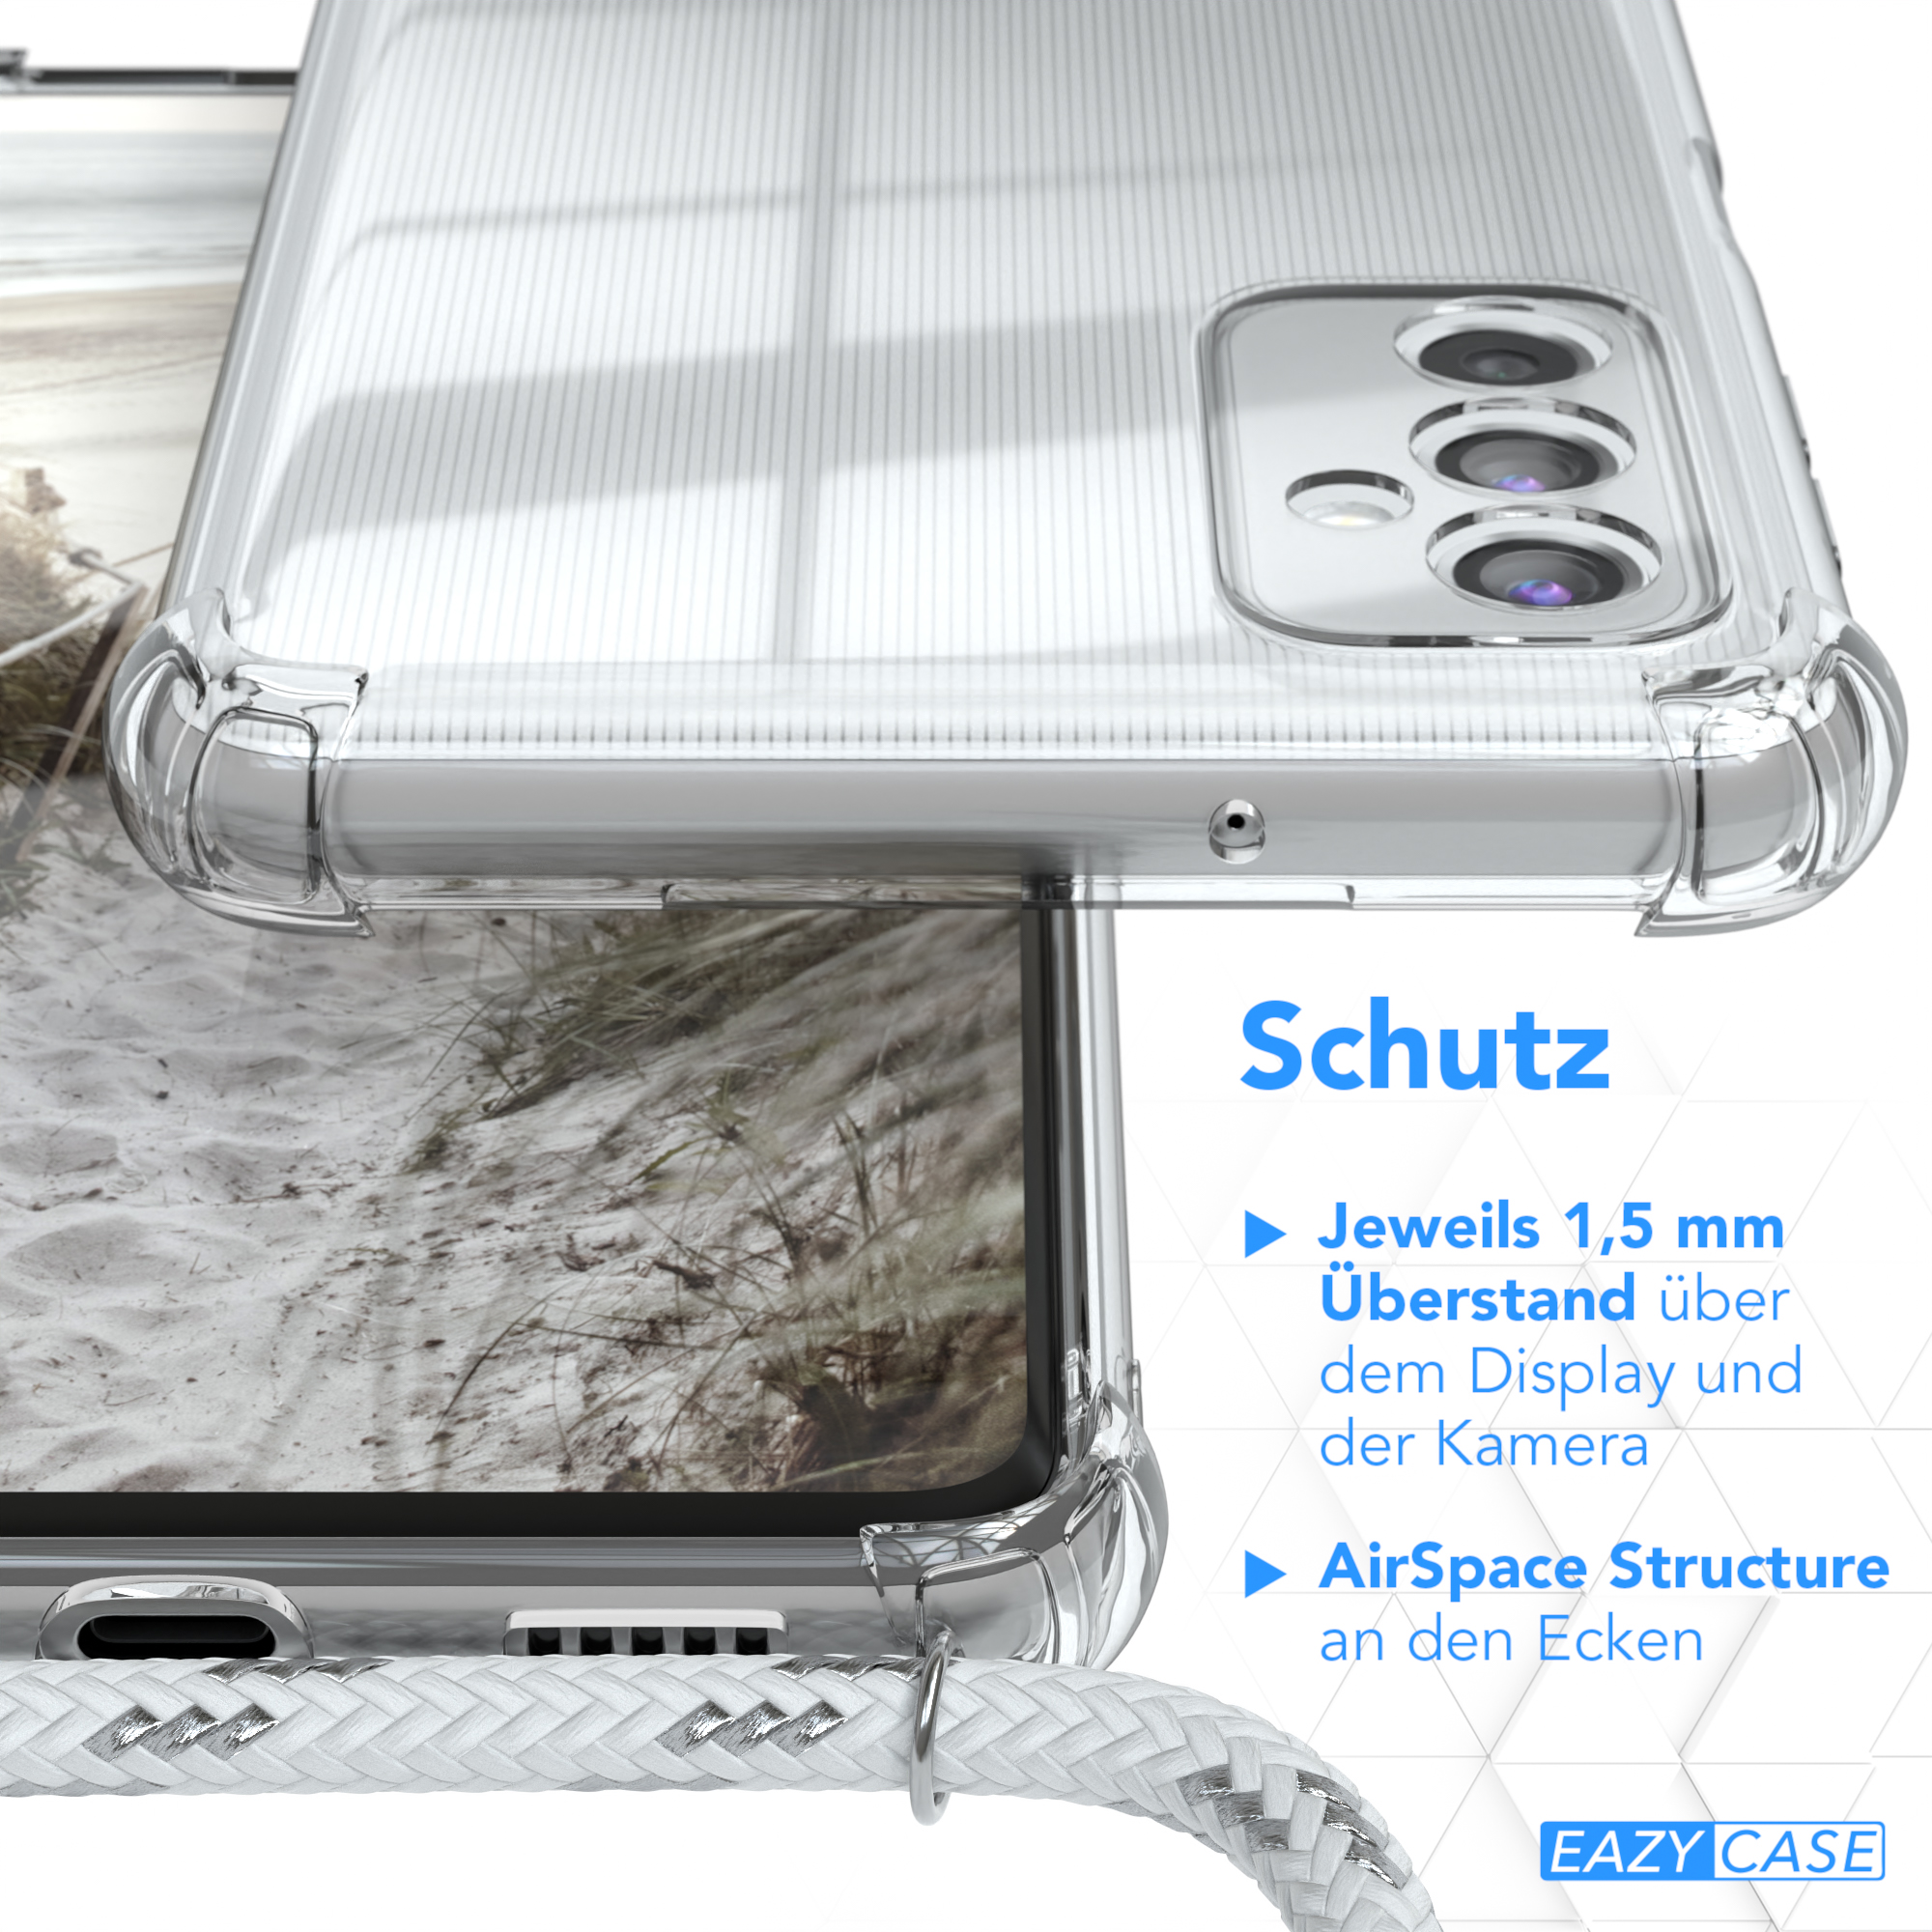 Clips CASE Samsung, Silber EAZY Umhängetasche, / Clear M52 mit Galaxy Cover Weiß Umhängeband, 5G,